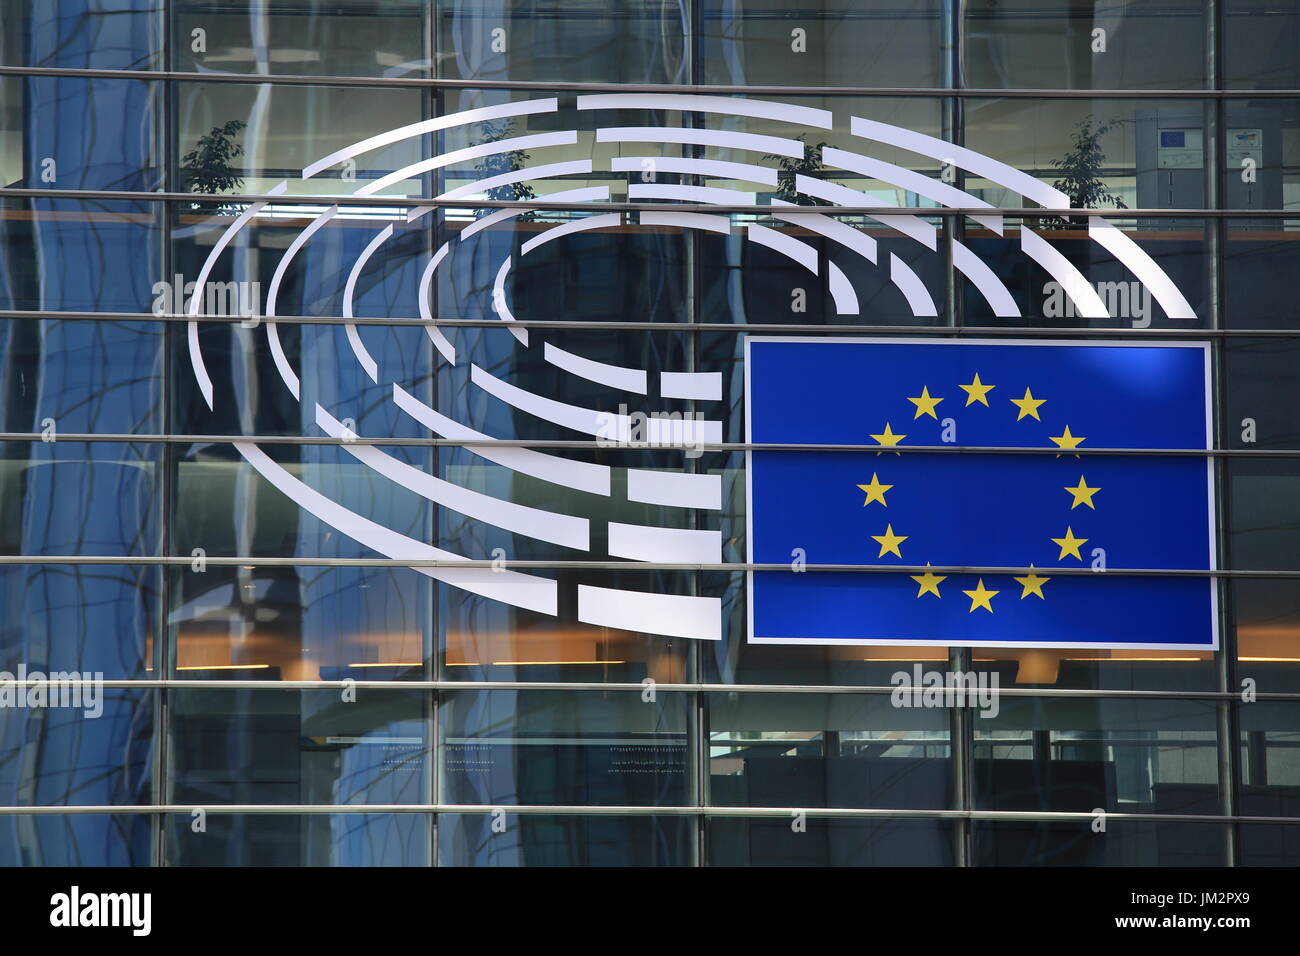 Bruxelles, Belgique - 17 juillet 2017 : emblème du Parlement européen close-up. Façade de verre du bâtiment du Parlement européen à Bruxelles. Banque D'Images